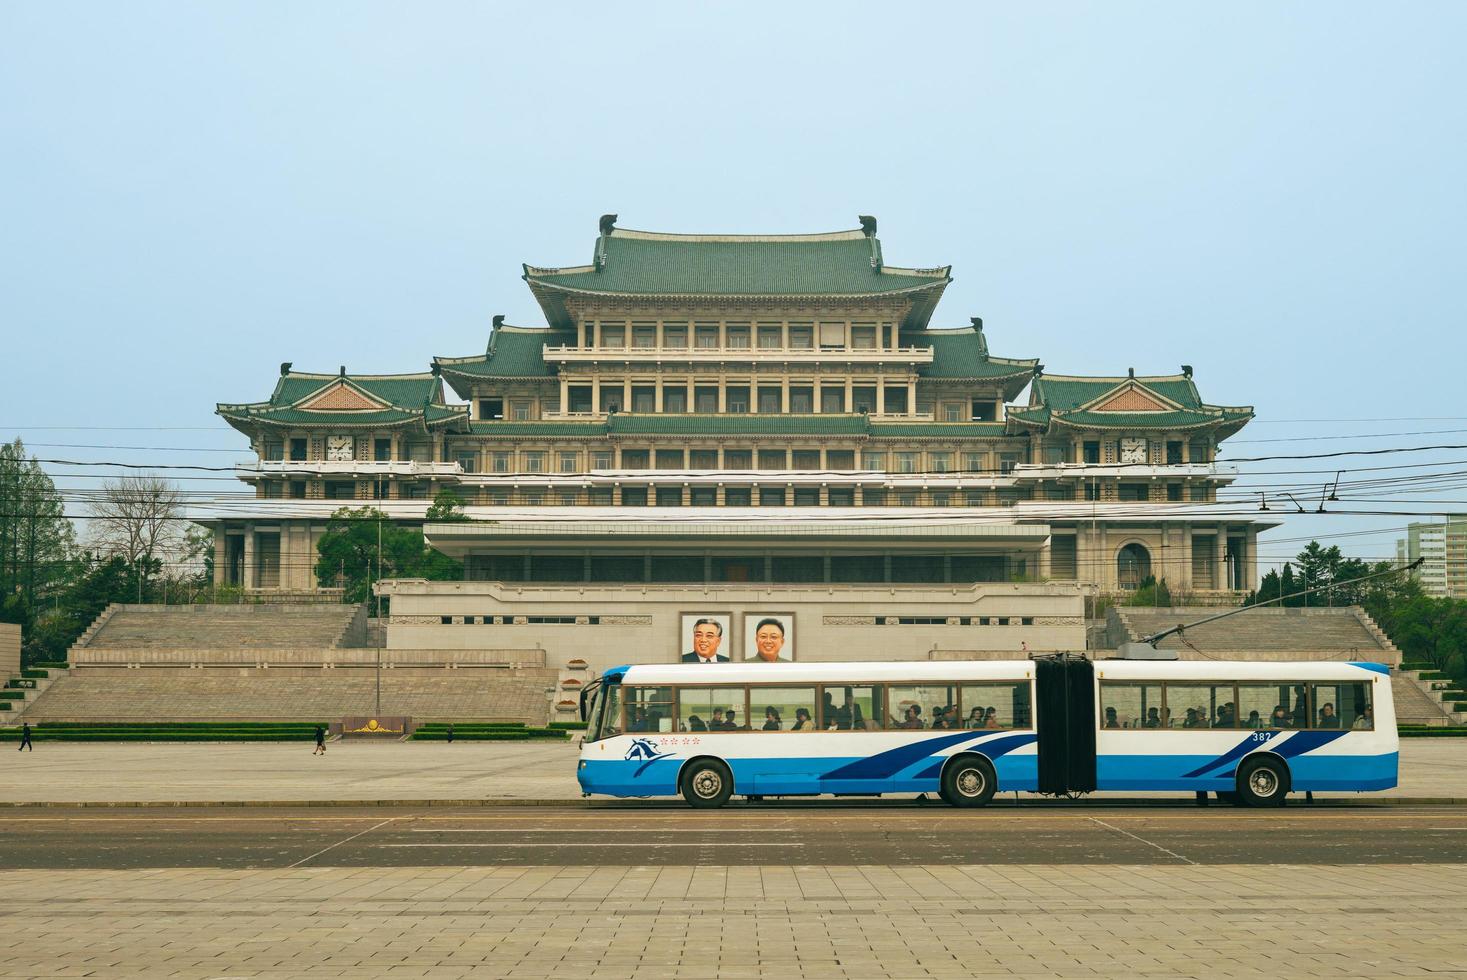 Grand Peoples Study House, de centrale bibliotheek op het Kim il Sung-plein in de Noord-Koreaanse hoofdstad Pyongyang, werd in april 1982 in traditionele Koreaanse stijl gebouwd. foto